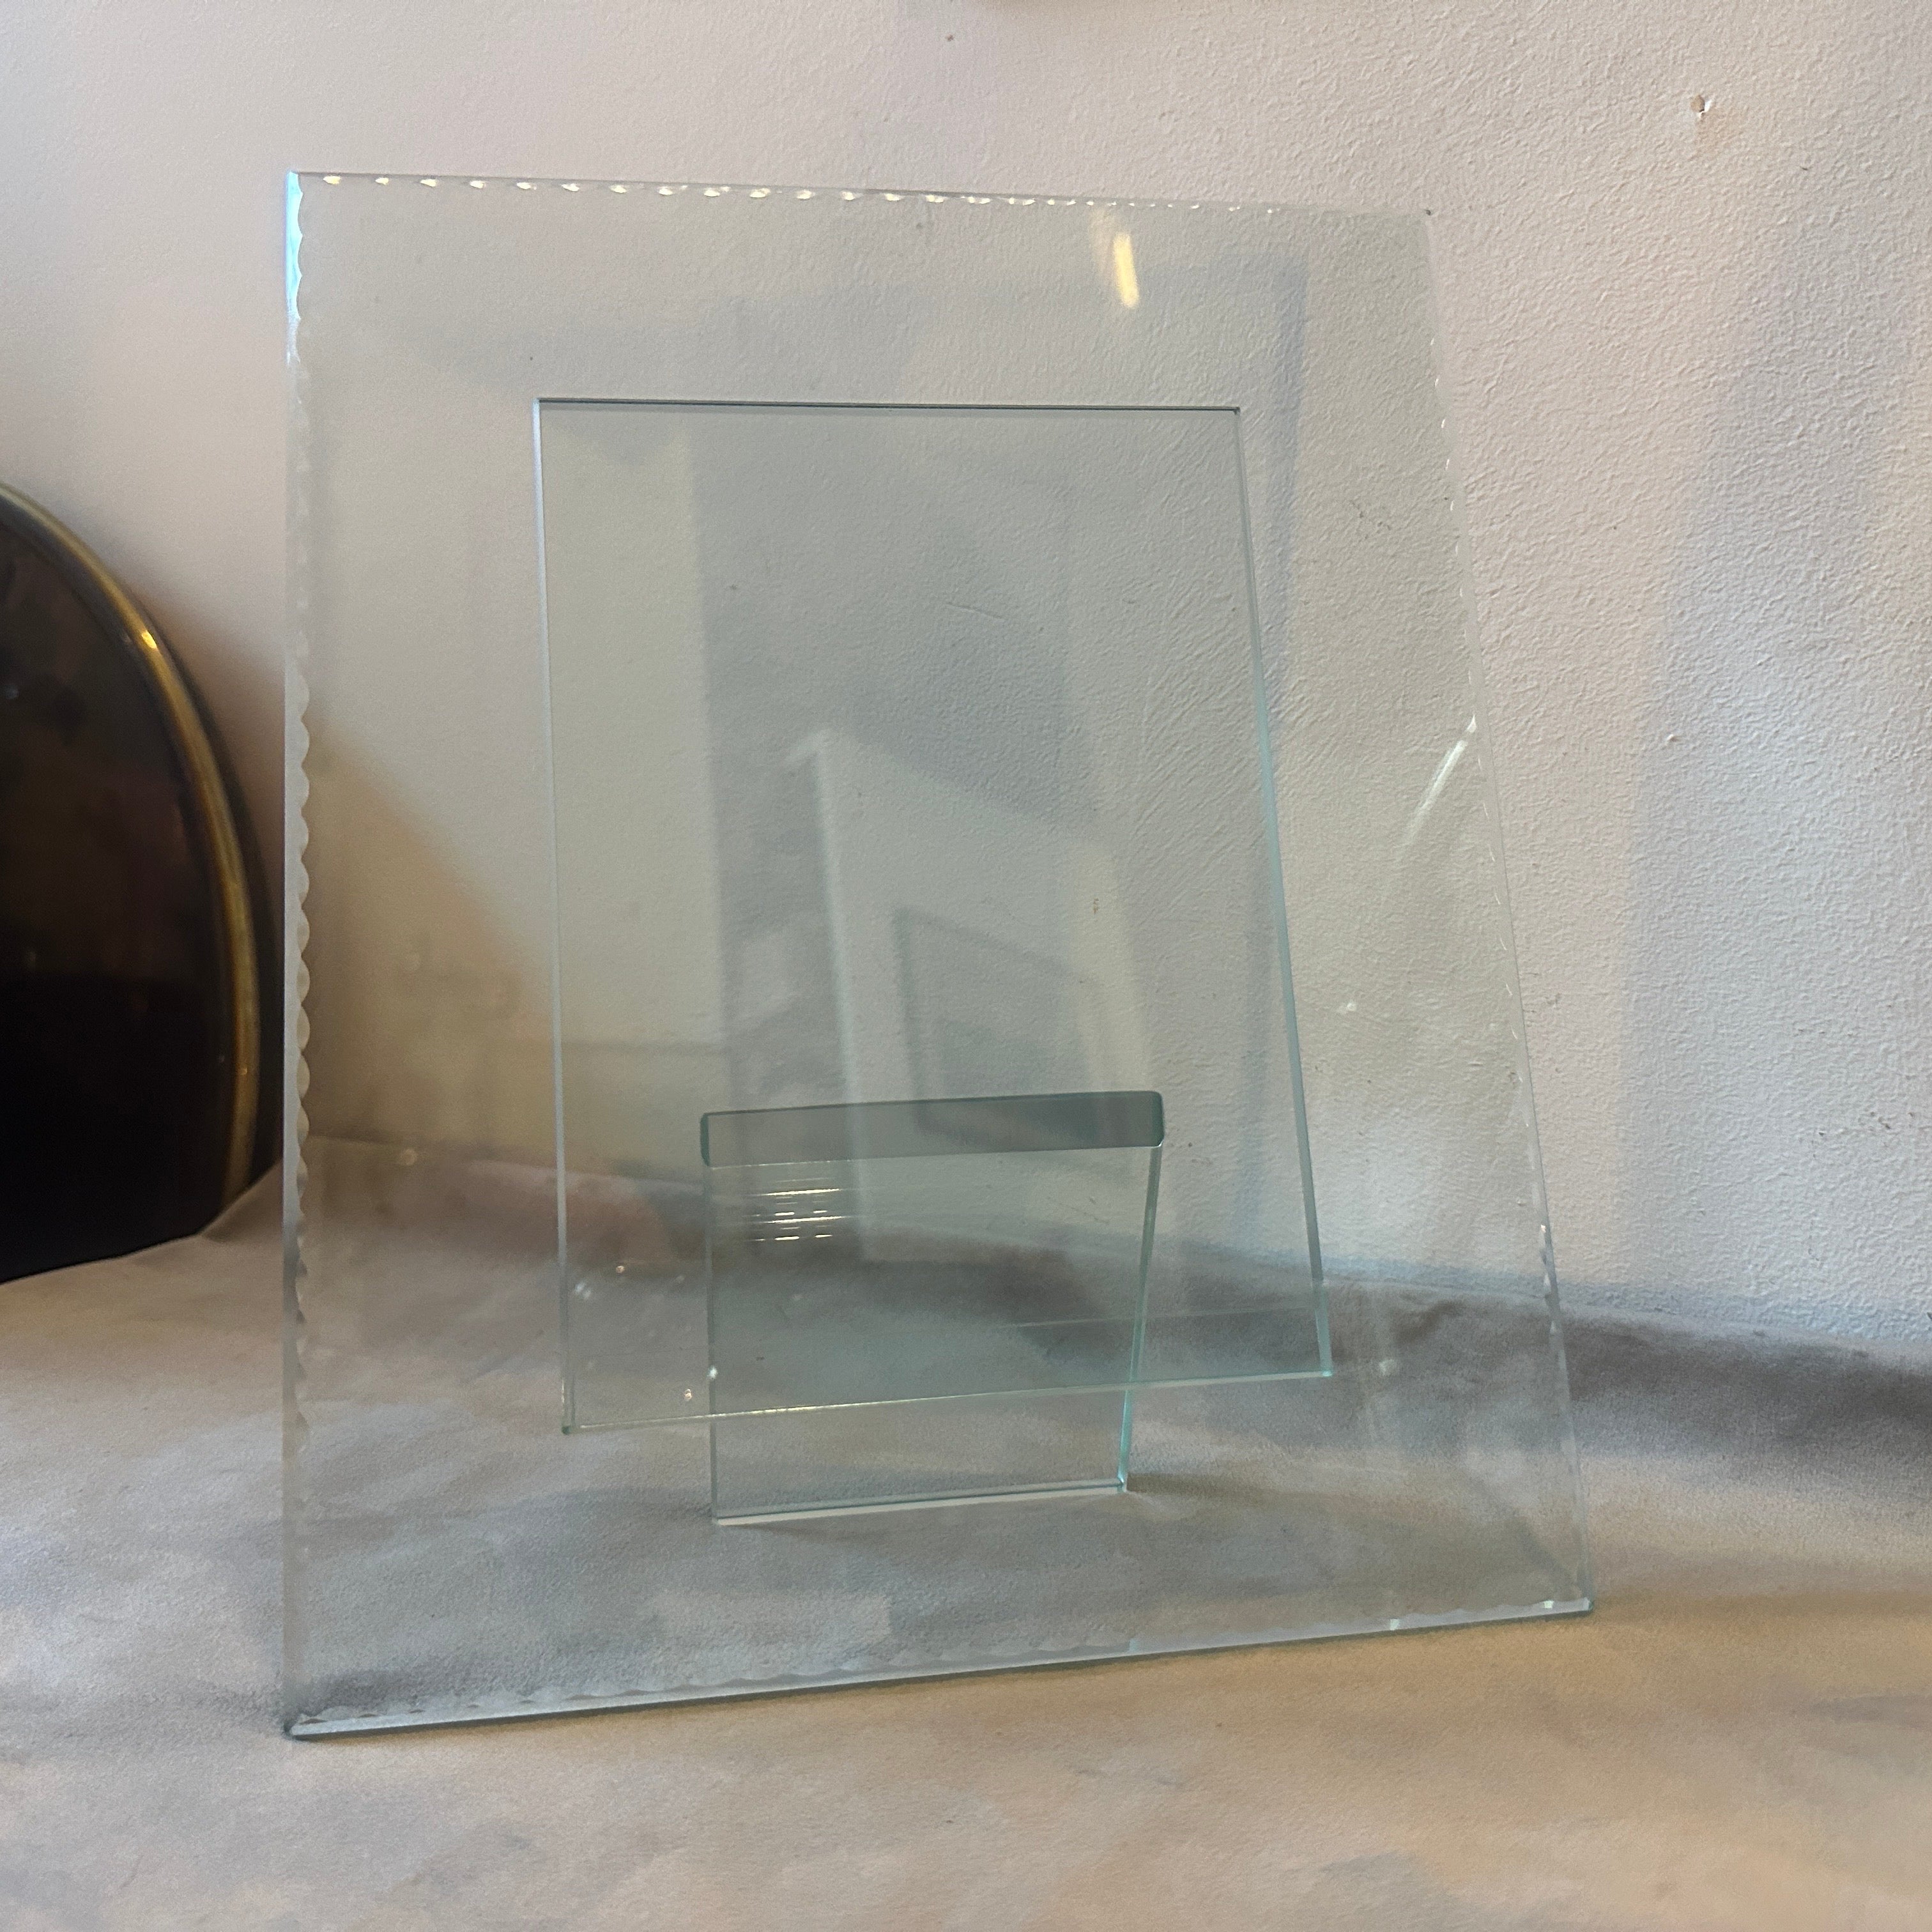 Un étonnant cadre rectangulaire conçu et fabriqué en Italie probablement par Fontana arte, le verre est de la couleur verte typique des années 50, le bord du verre est meulé et ciselé. Le cadre est en parfait état. Dans les années 1950, Fontana